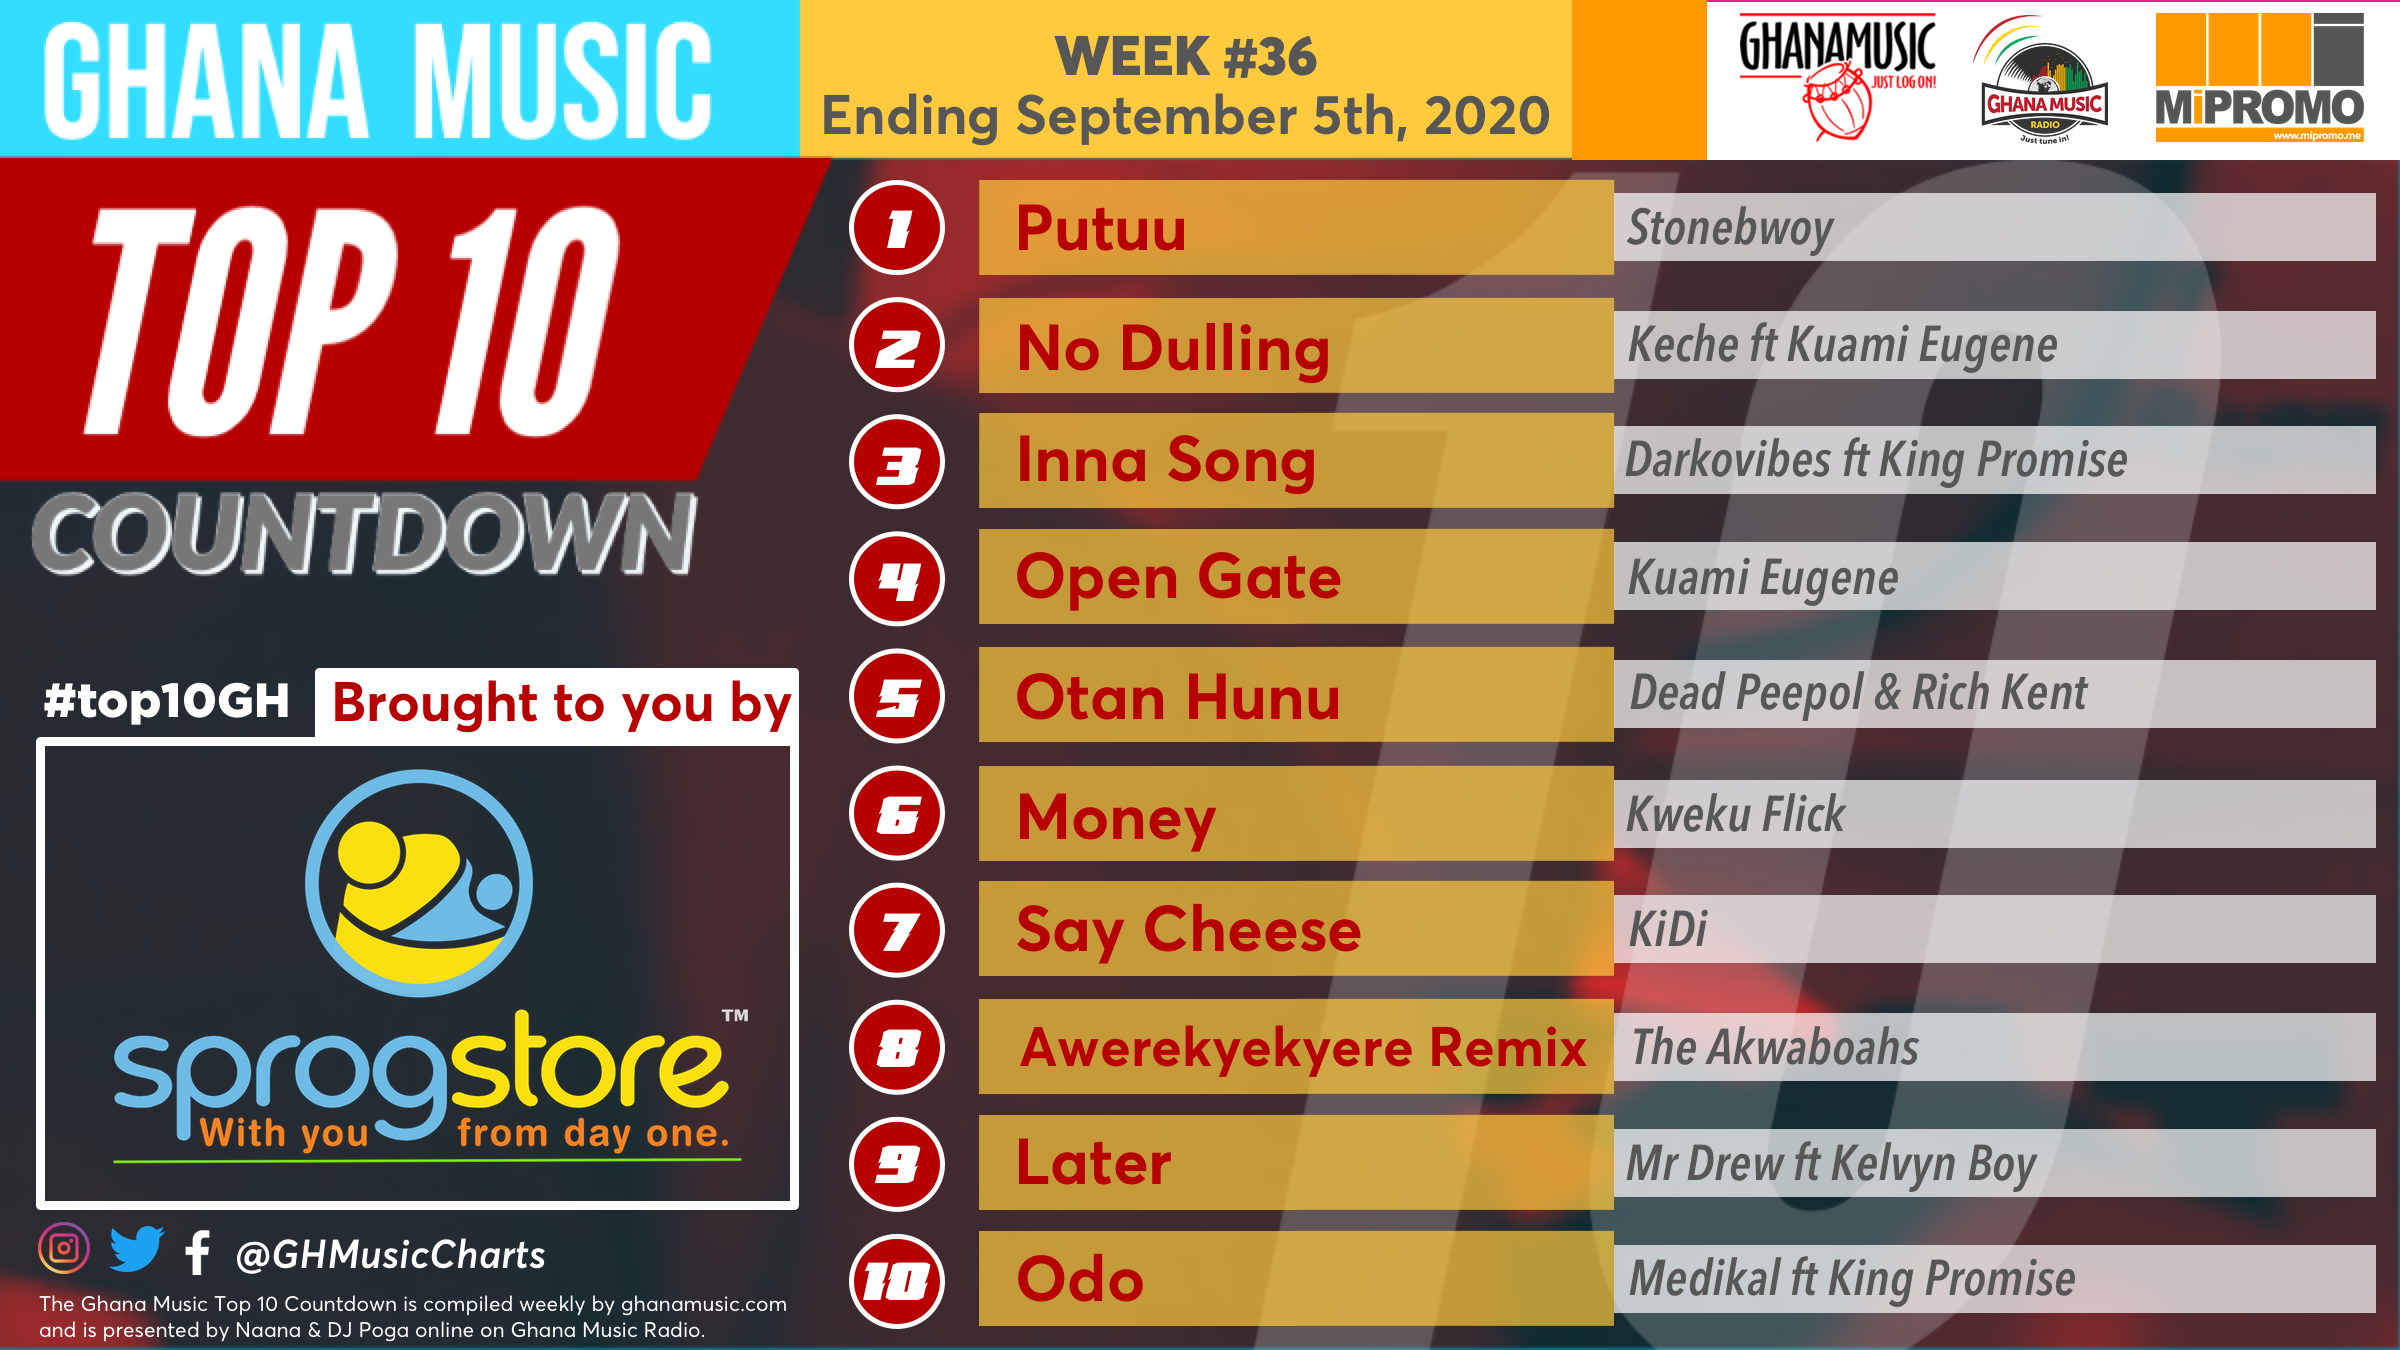 2020 Week 36: Ghana Music Top 10 Countdown